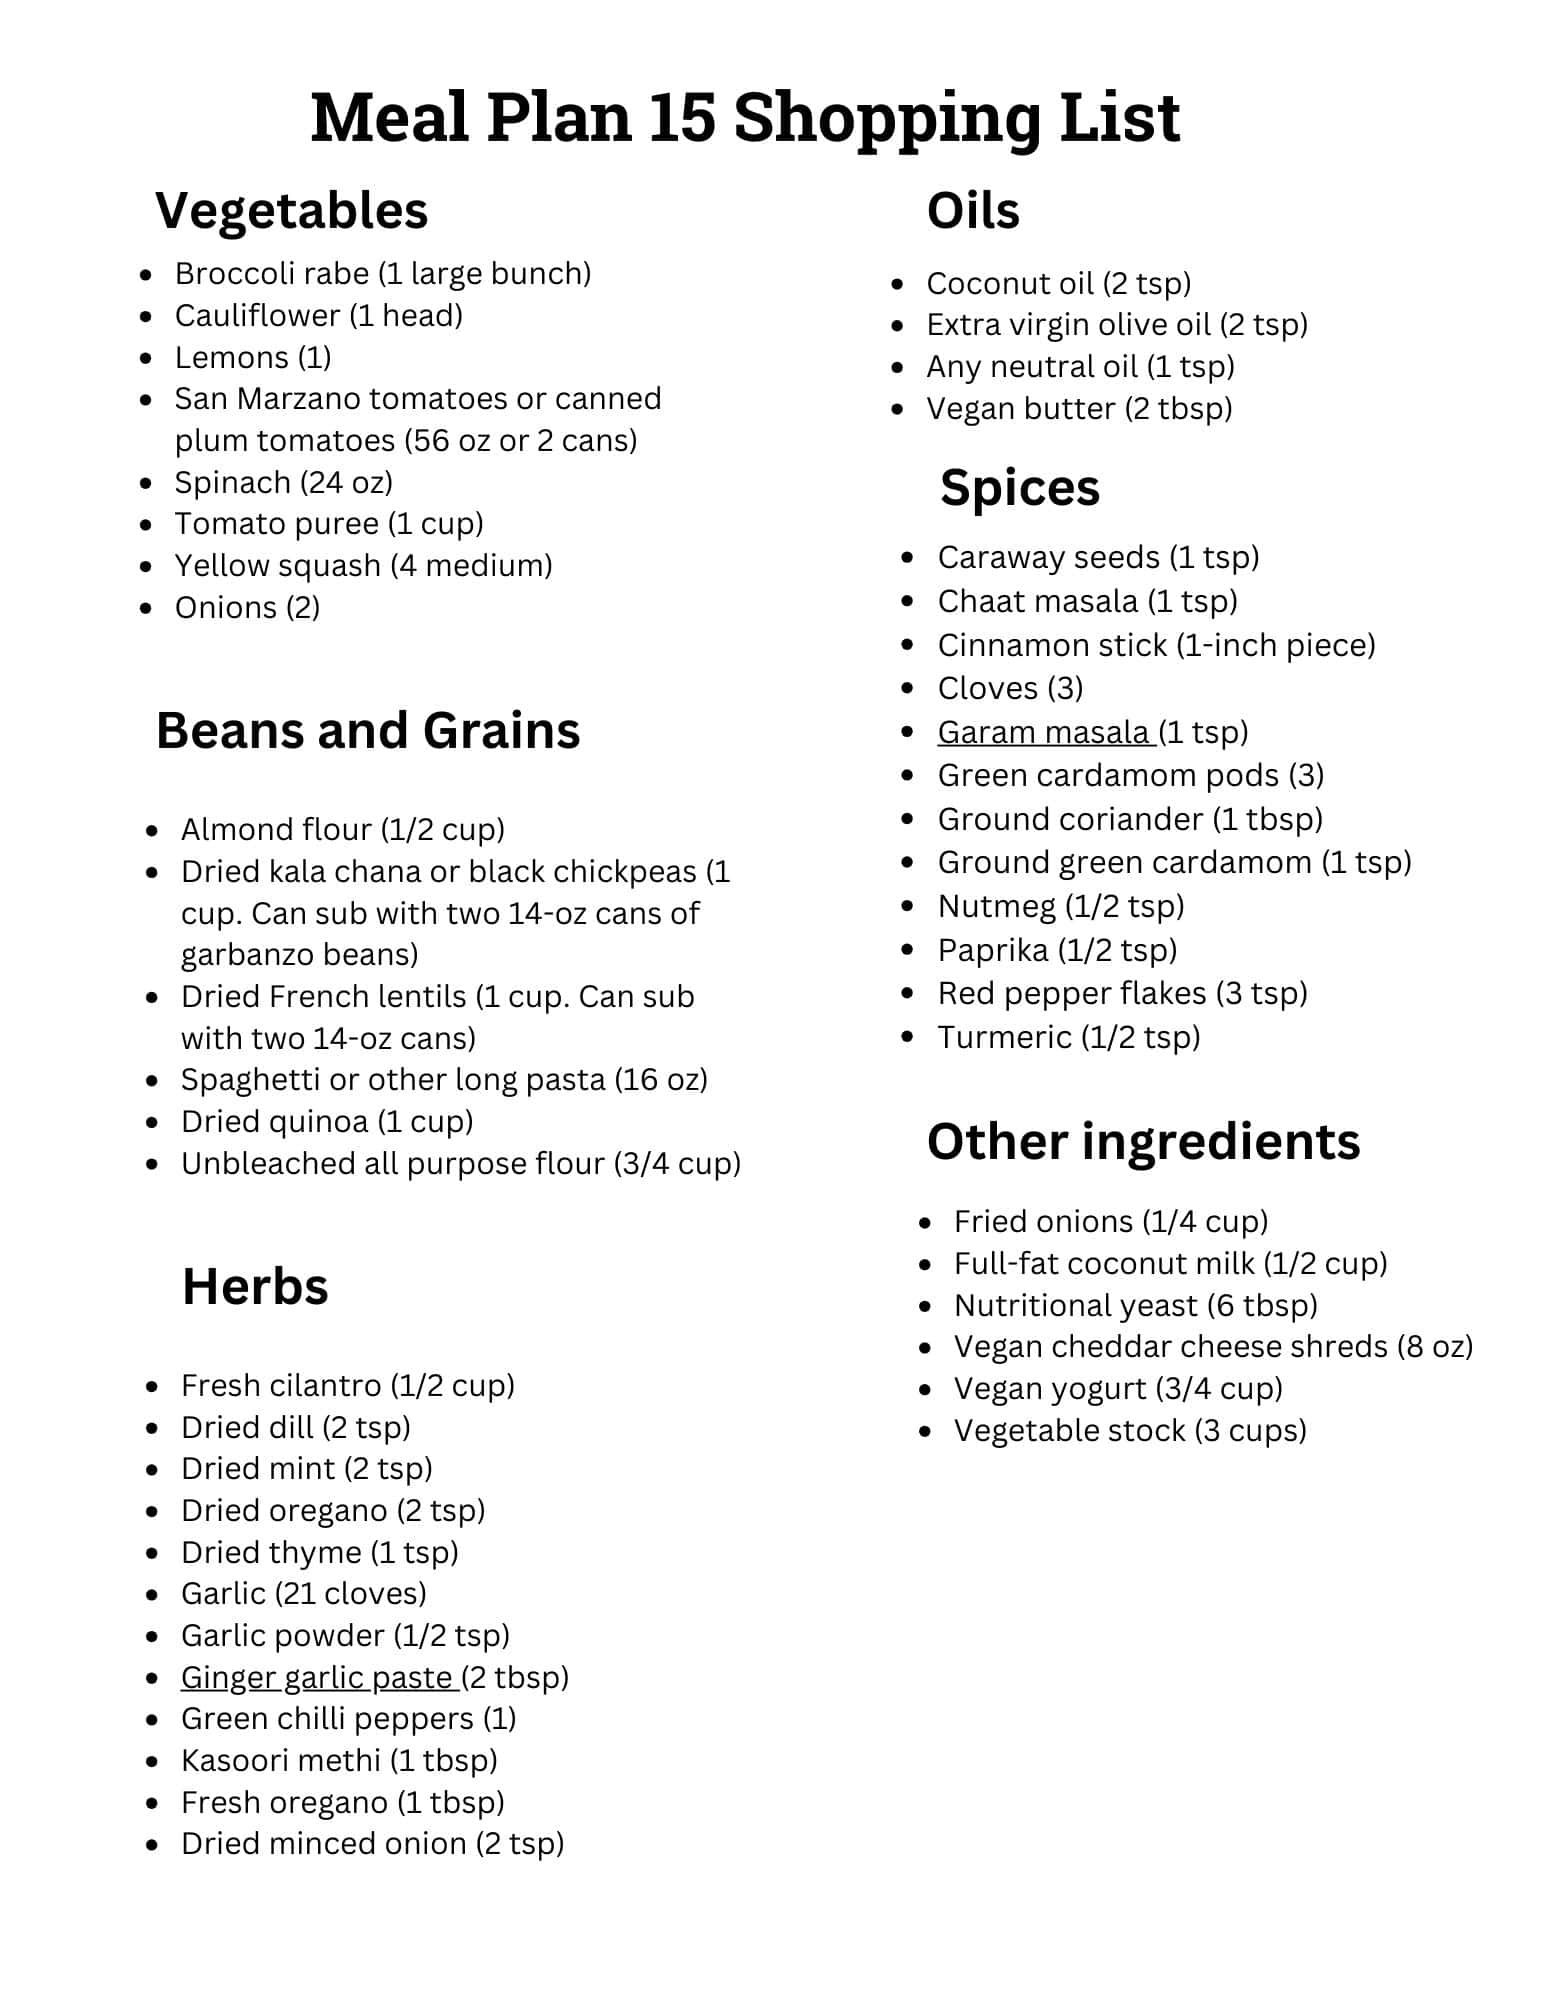 Vegan meal plan 15 shopping list image.